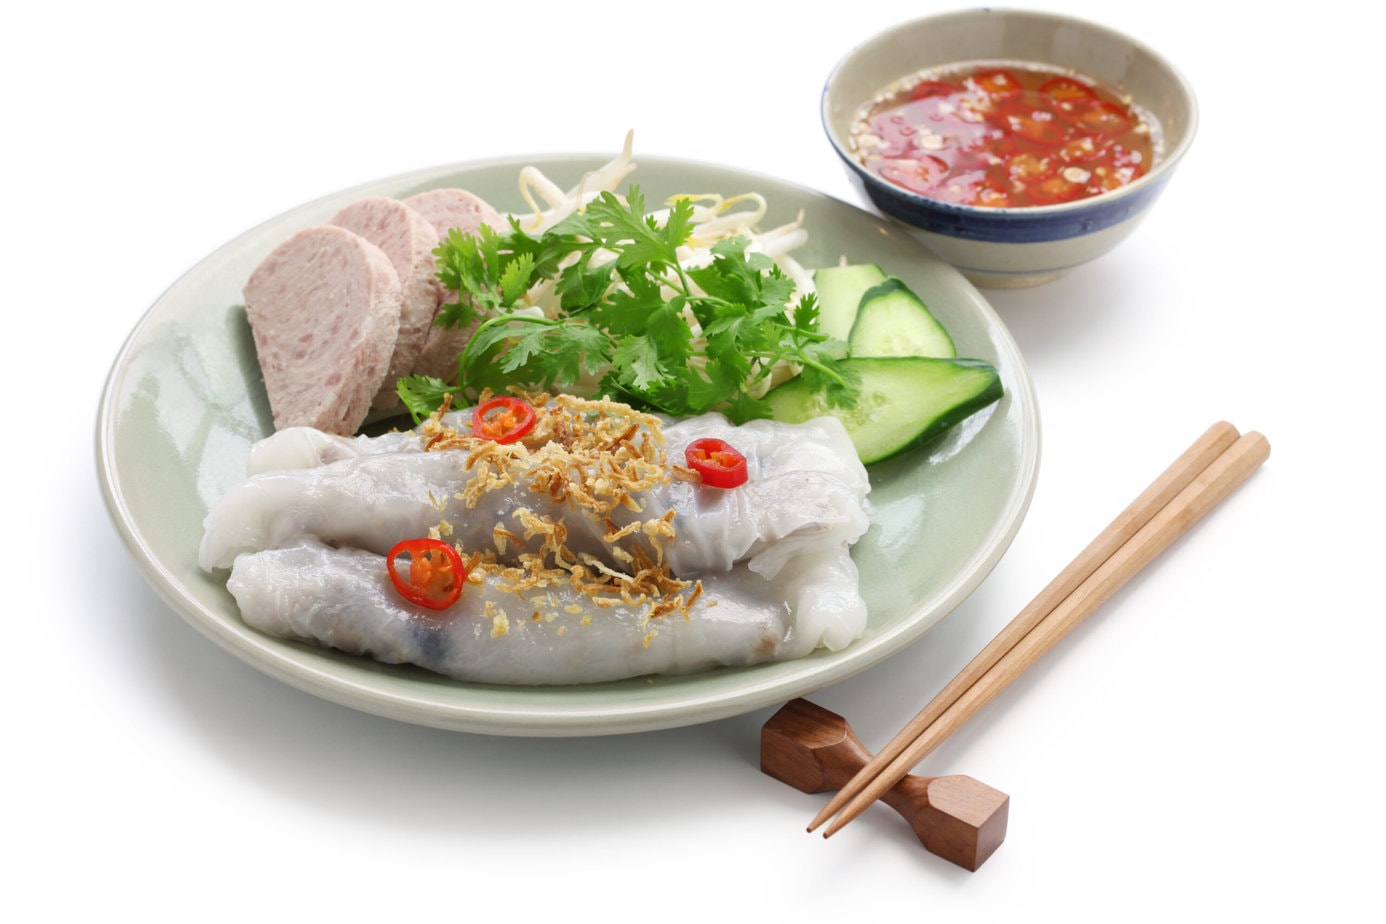 banh cuon avec nuoc cham sur fond blanc